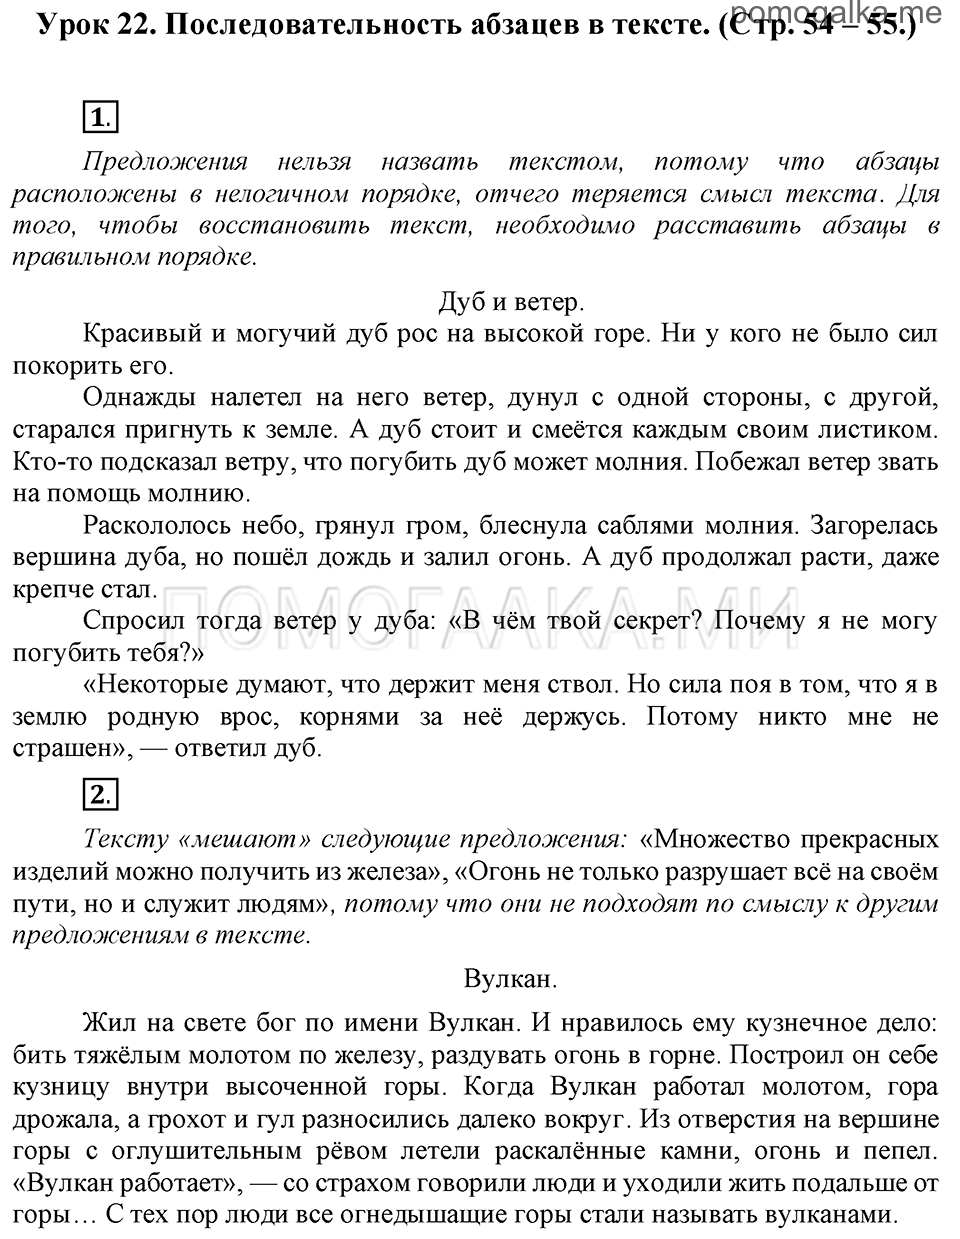 часть 1 страницы 54-55 урок 22 русский язык 3 класс Иванов, Евдокимова, Кузнецова